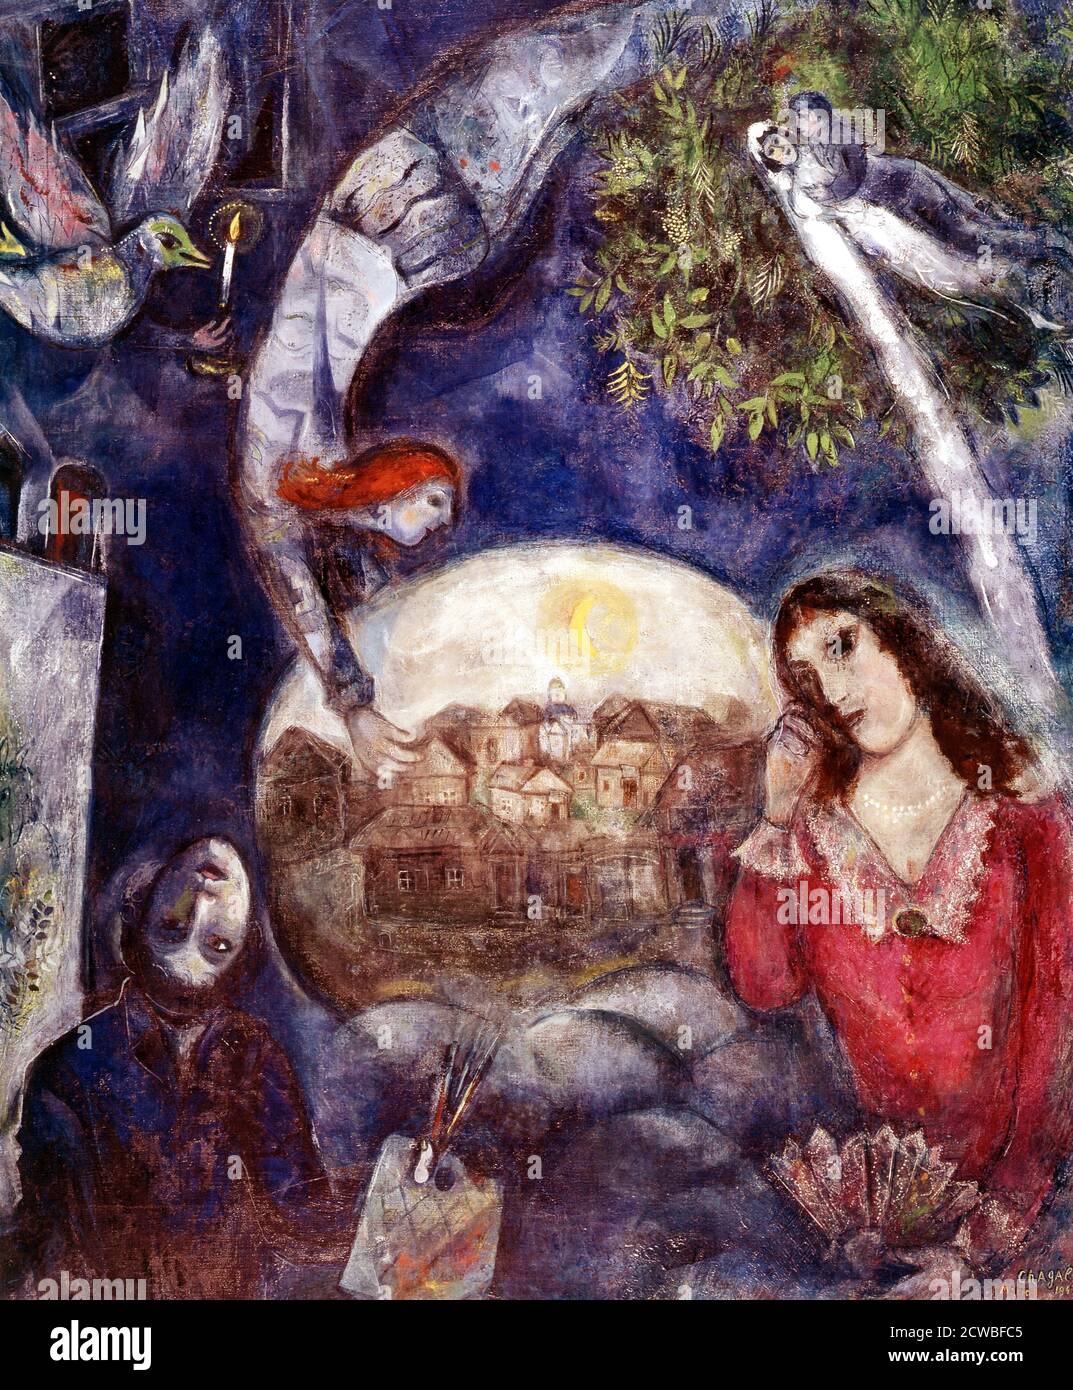 An Unstering Love: 'Around her'; 1945, von Marc Chagall (1887 - 1985); russisch-französischer Künstler des weißrussischen jüdischen Künstlers. Bella Rosenfeld traf Marc Chagall im Sommer 1909 bei einem Besuch in St. Petersburg. Marc war ein aufstrebender Künstler, der sich in der Entstehung seines mittlerweile berühmten Oeuvres befand. Bella, die Tochter eines erfolgreichen Juweliers, befand sich mitten in ihrem Studium und erwarb sich einen Vorgeschmack auf das Schreiben. Ihr Treffen war der Beginn einer Künstler-Muse-Beziehung, die einige von Chagall's besten Arbeiten inspirieren würde. Stockfoto